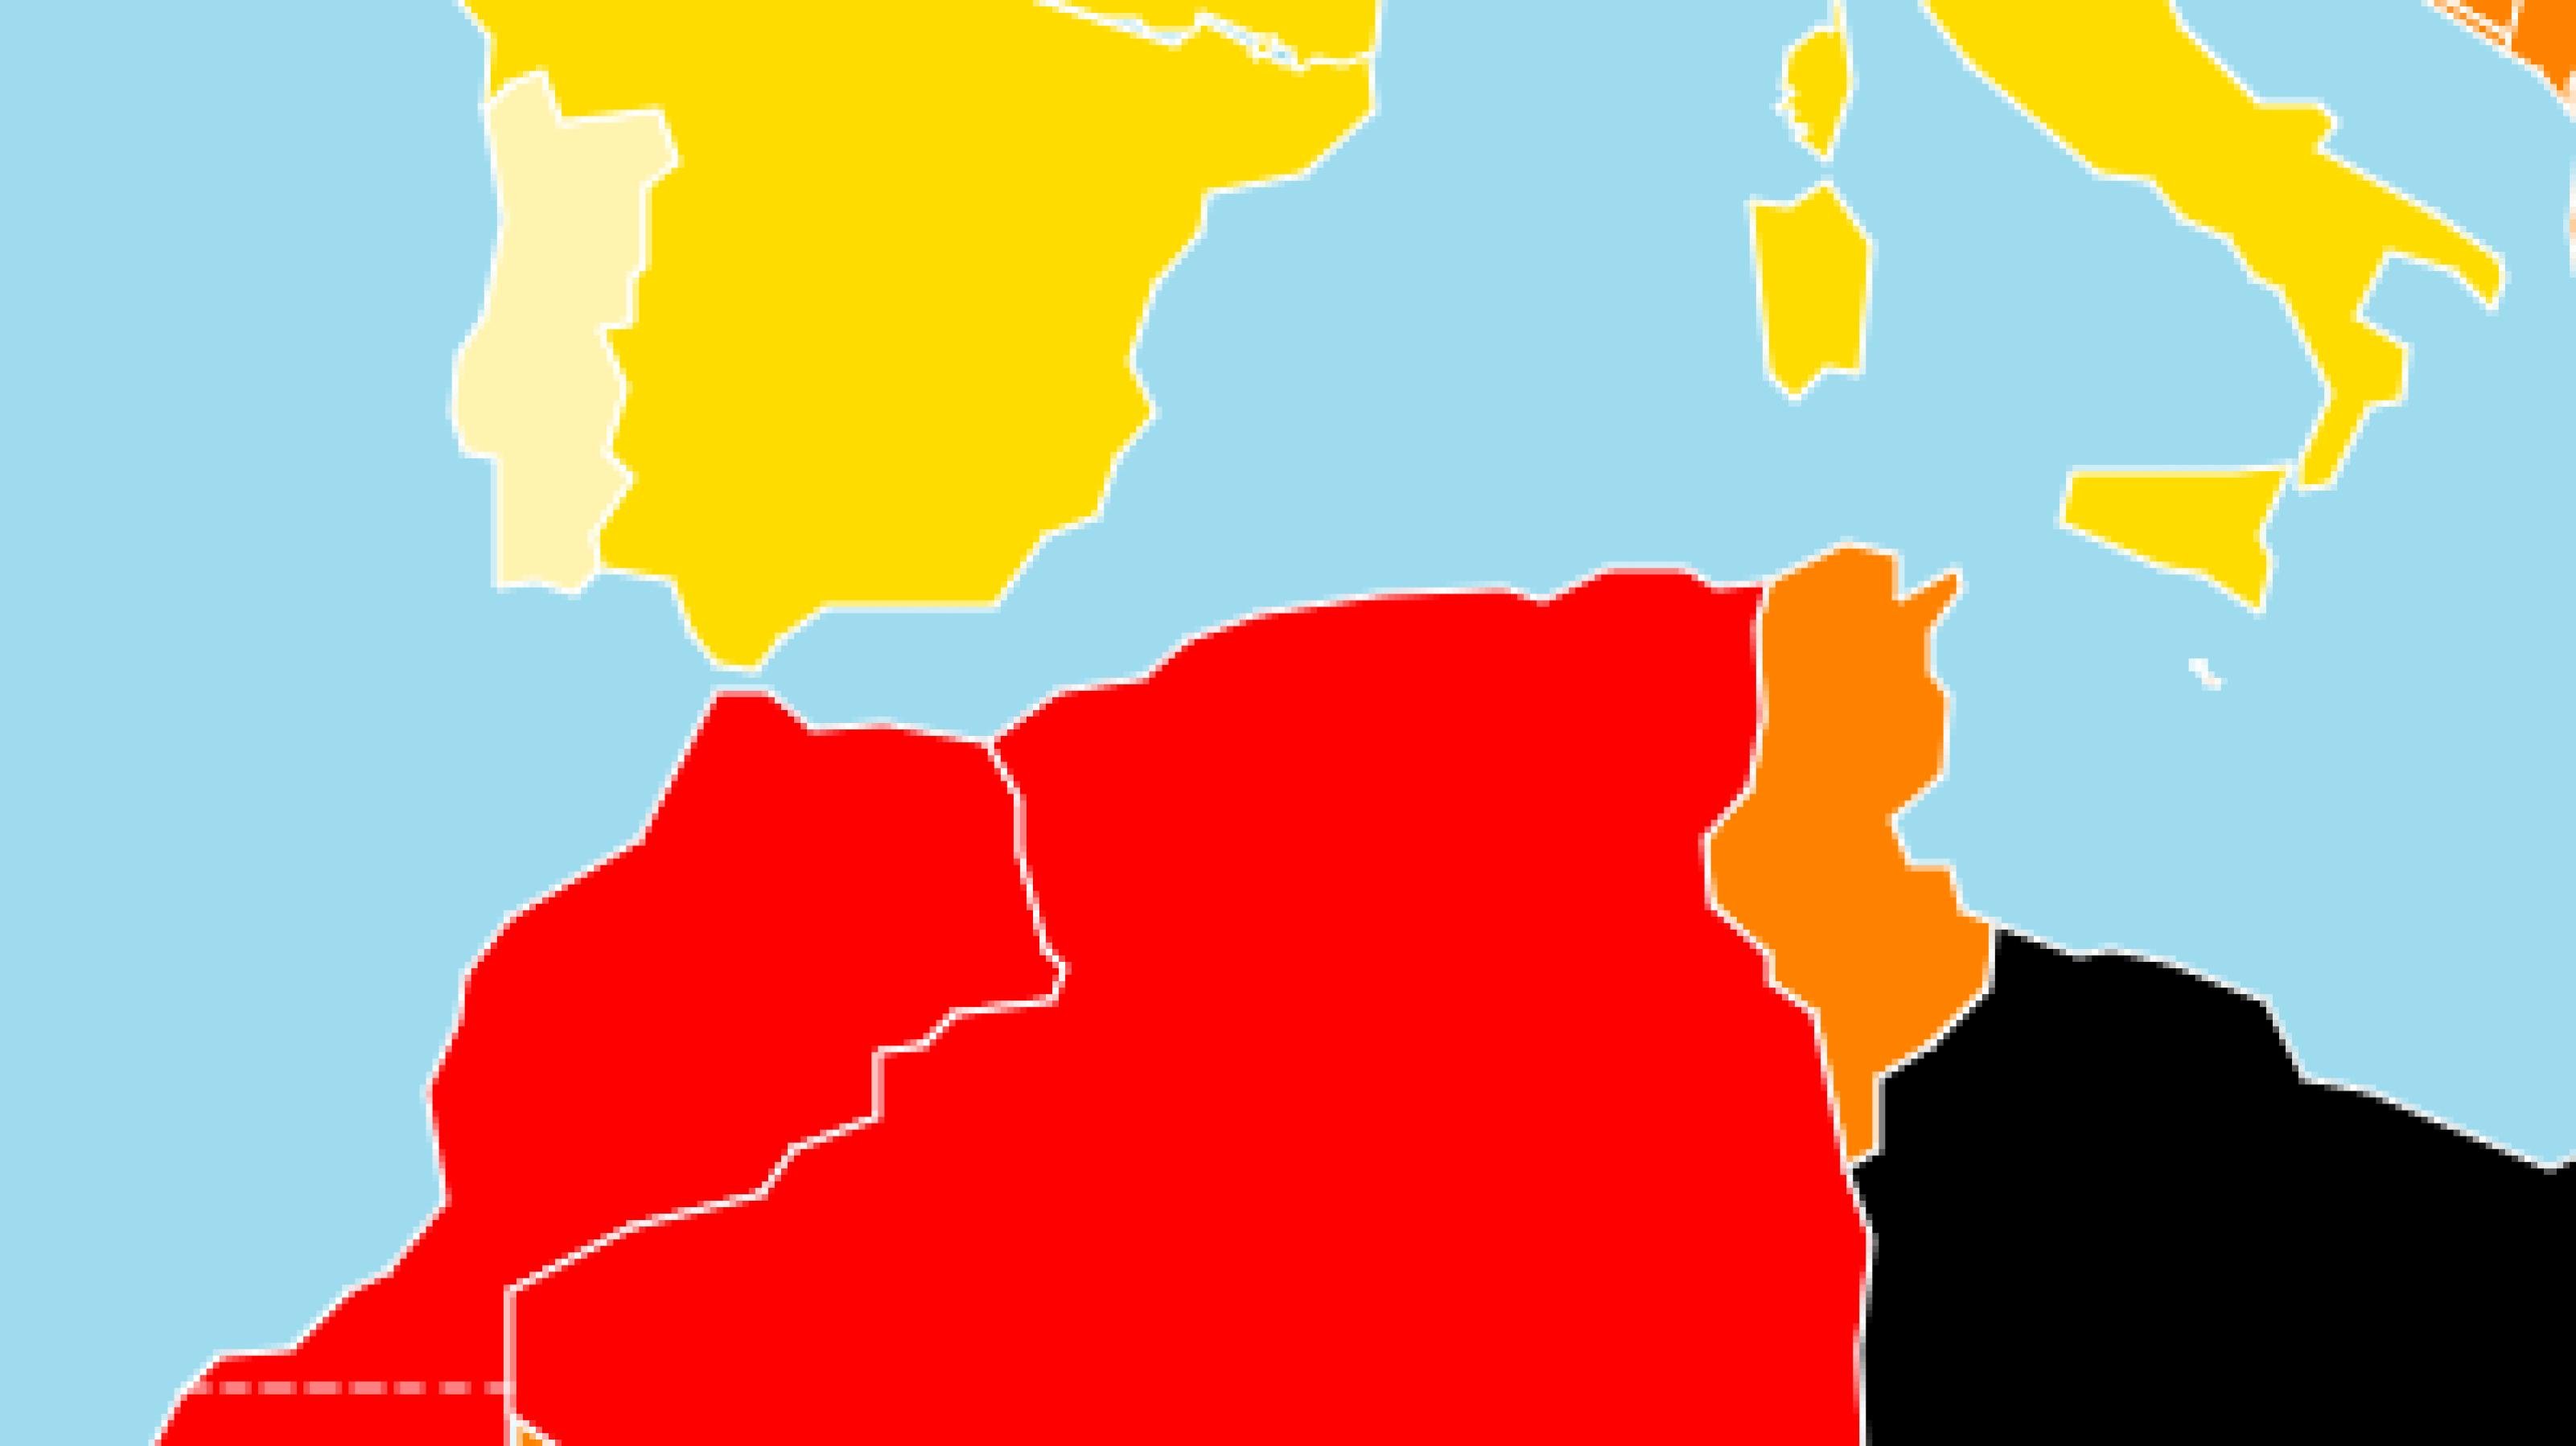 Ausschnitt aus der Karte, die das Ranking der Maghreb-Staaten von Reporter ohne Grenzen visualisiert: rot für Algerien und Marokko, orange für Tunesien